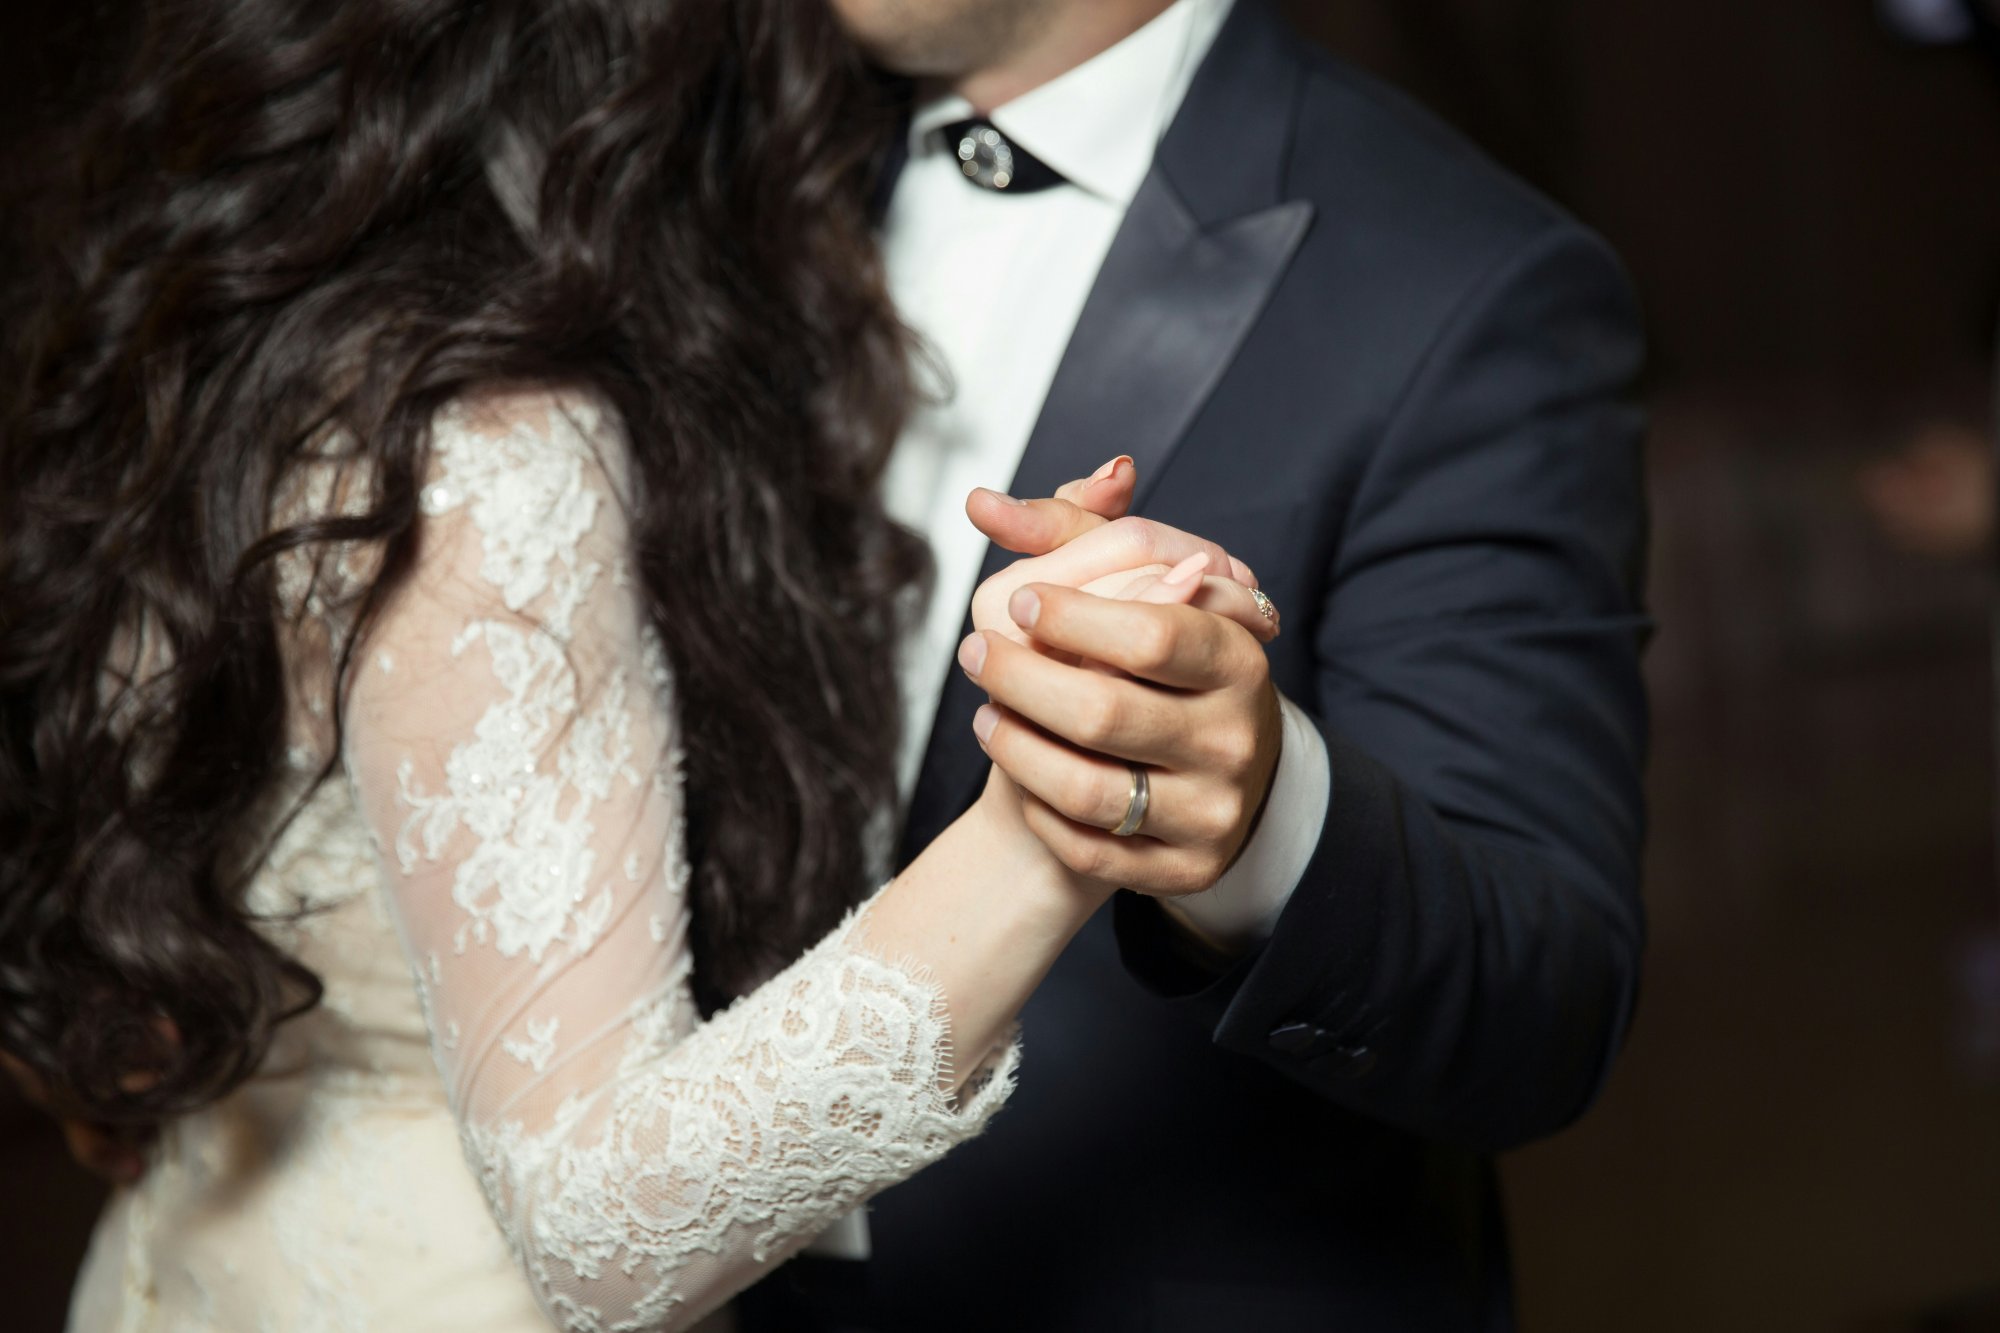 Οι 13 αυστηροί κανόνες για έναν πετυχημένο γάμο που προκάλεσαν οργή στους καλεσμένους 